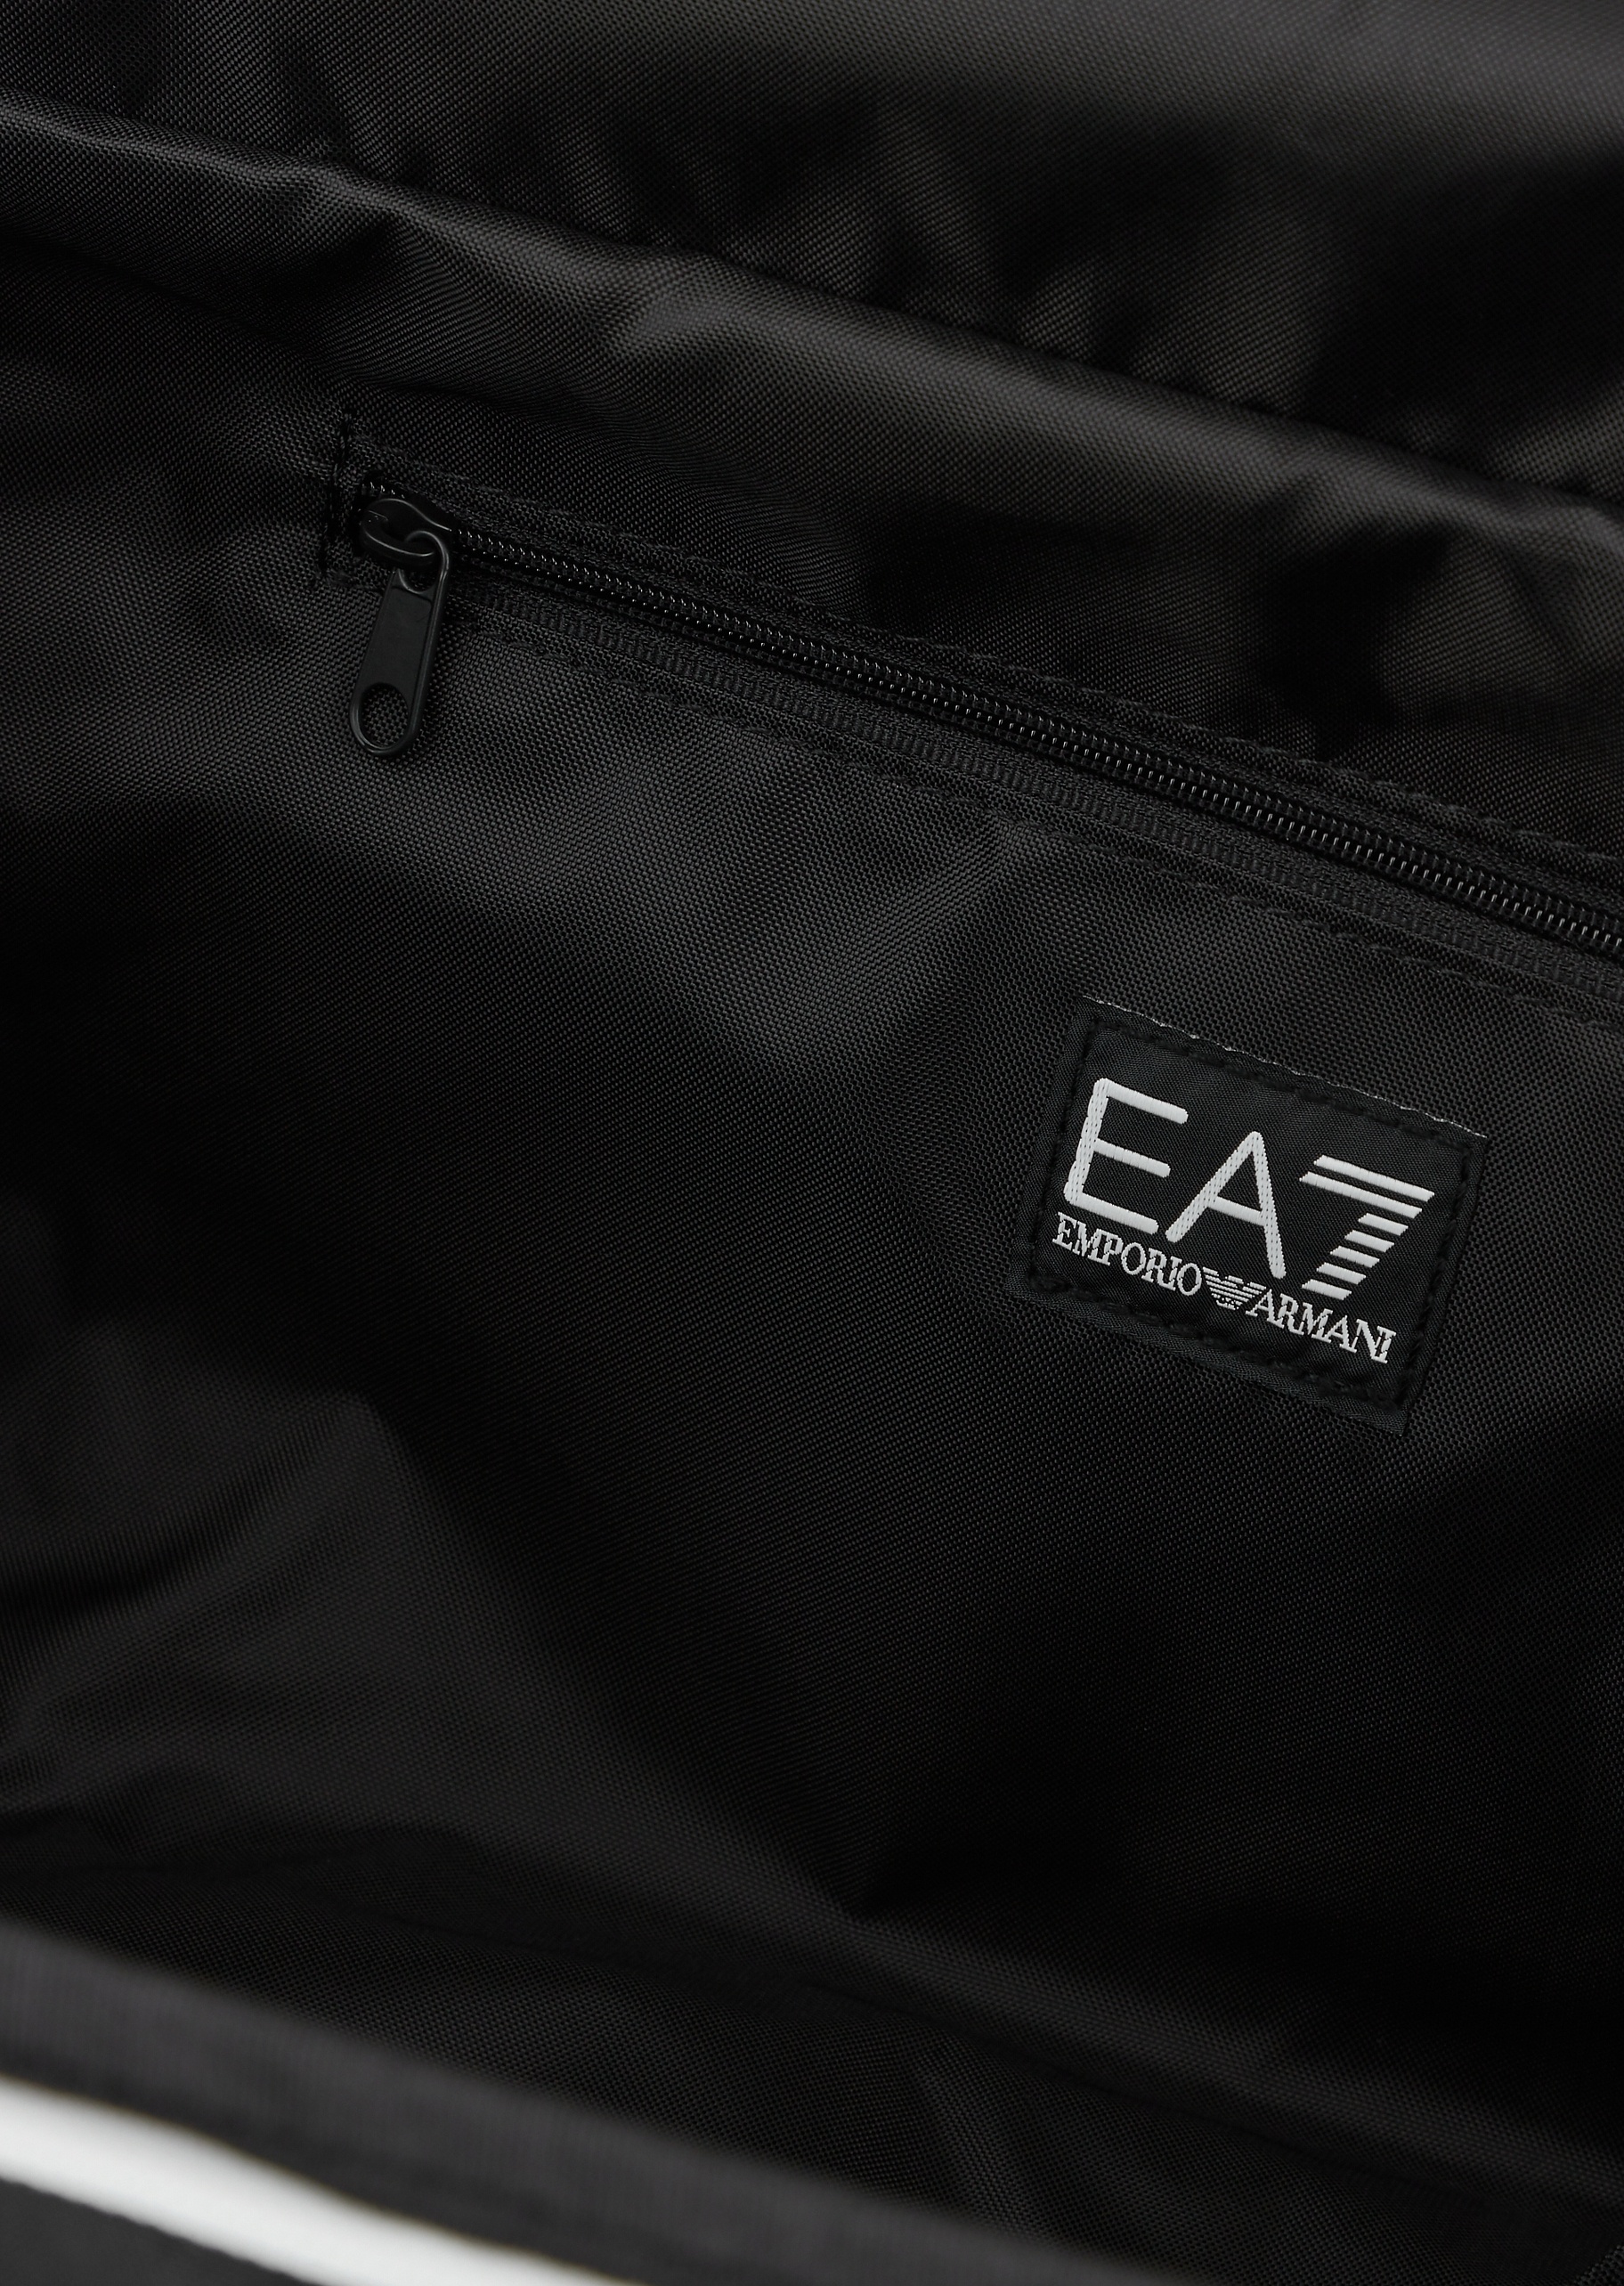 EA7 印花拉链百搭背提包